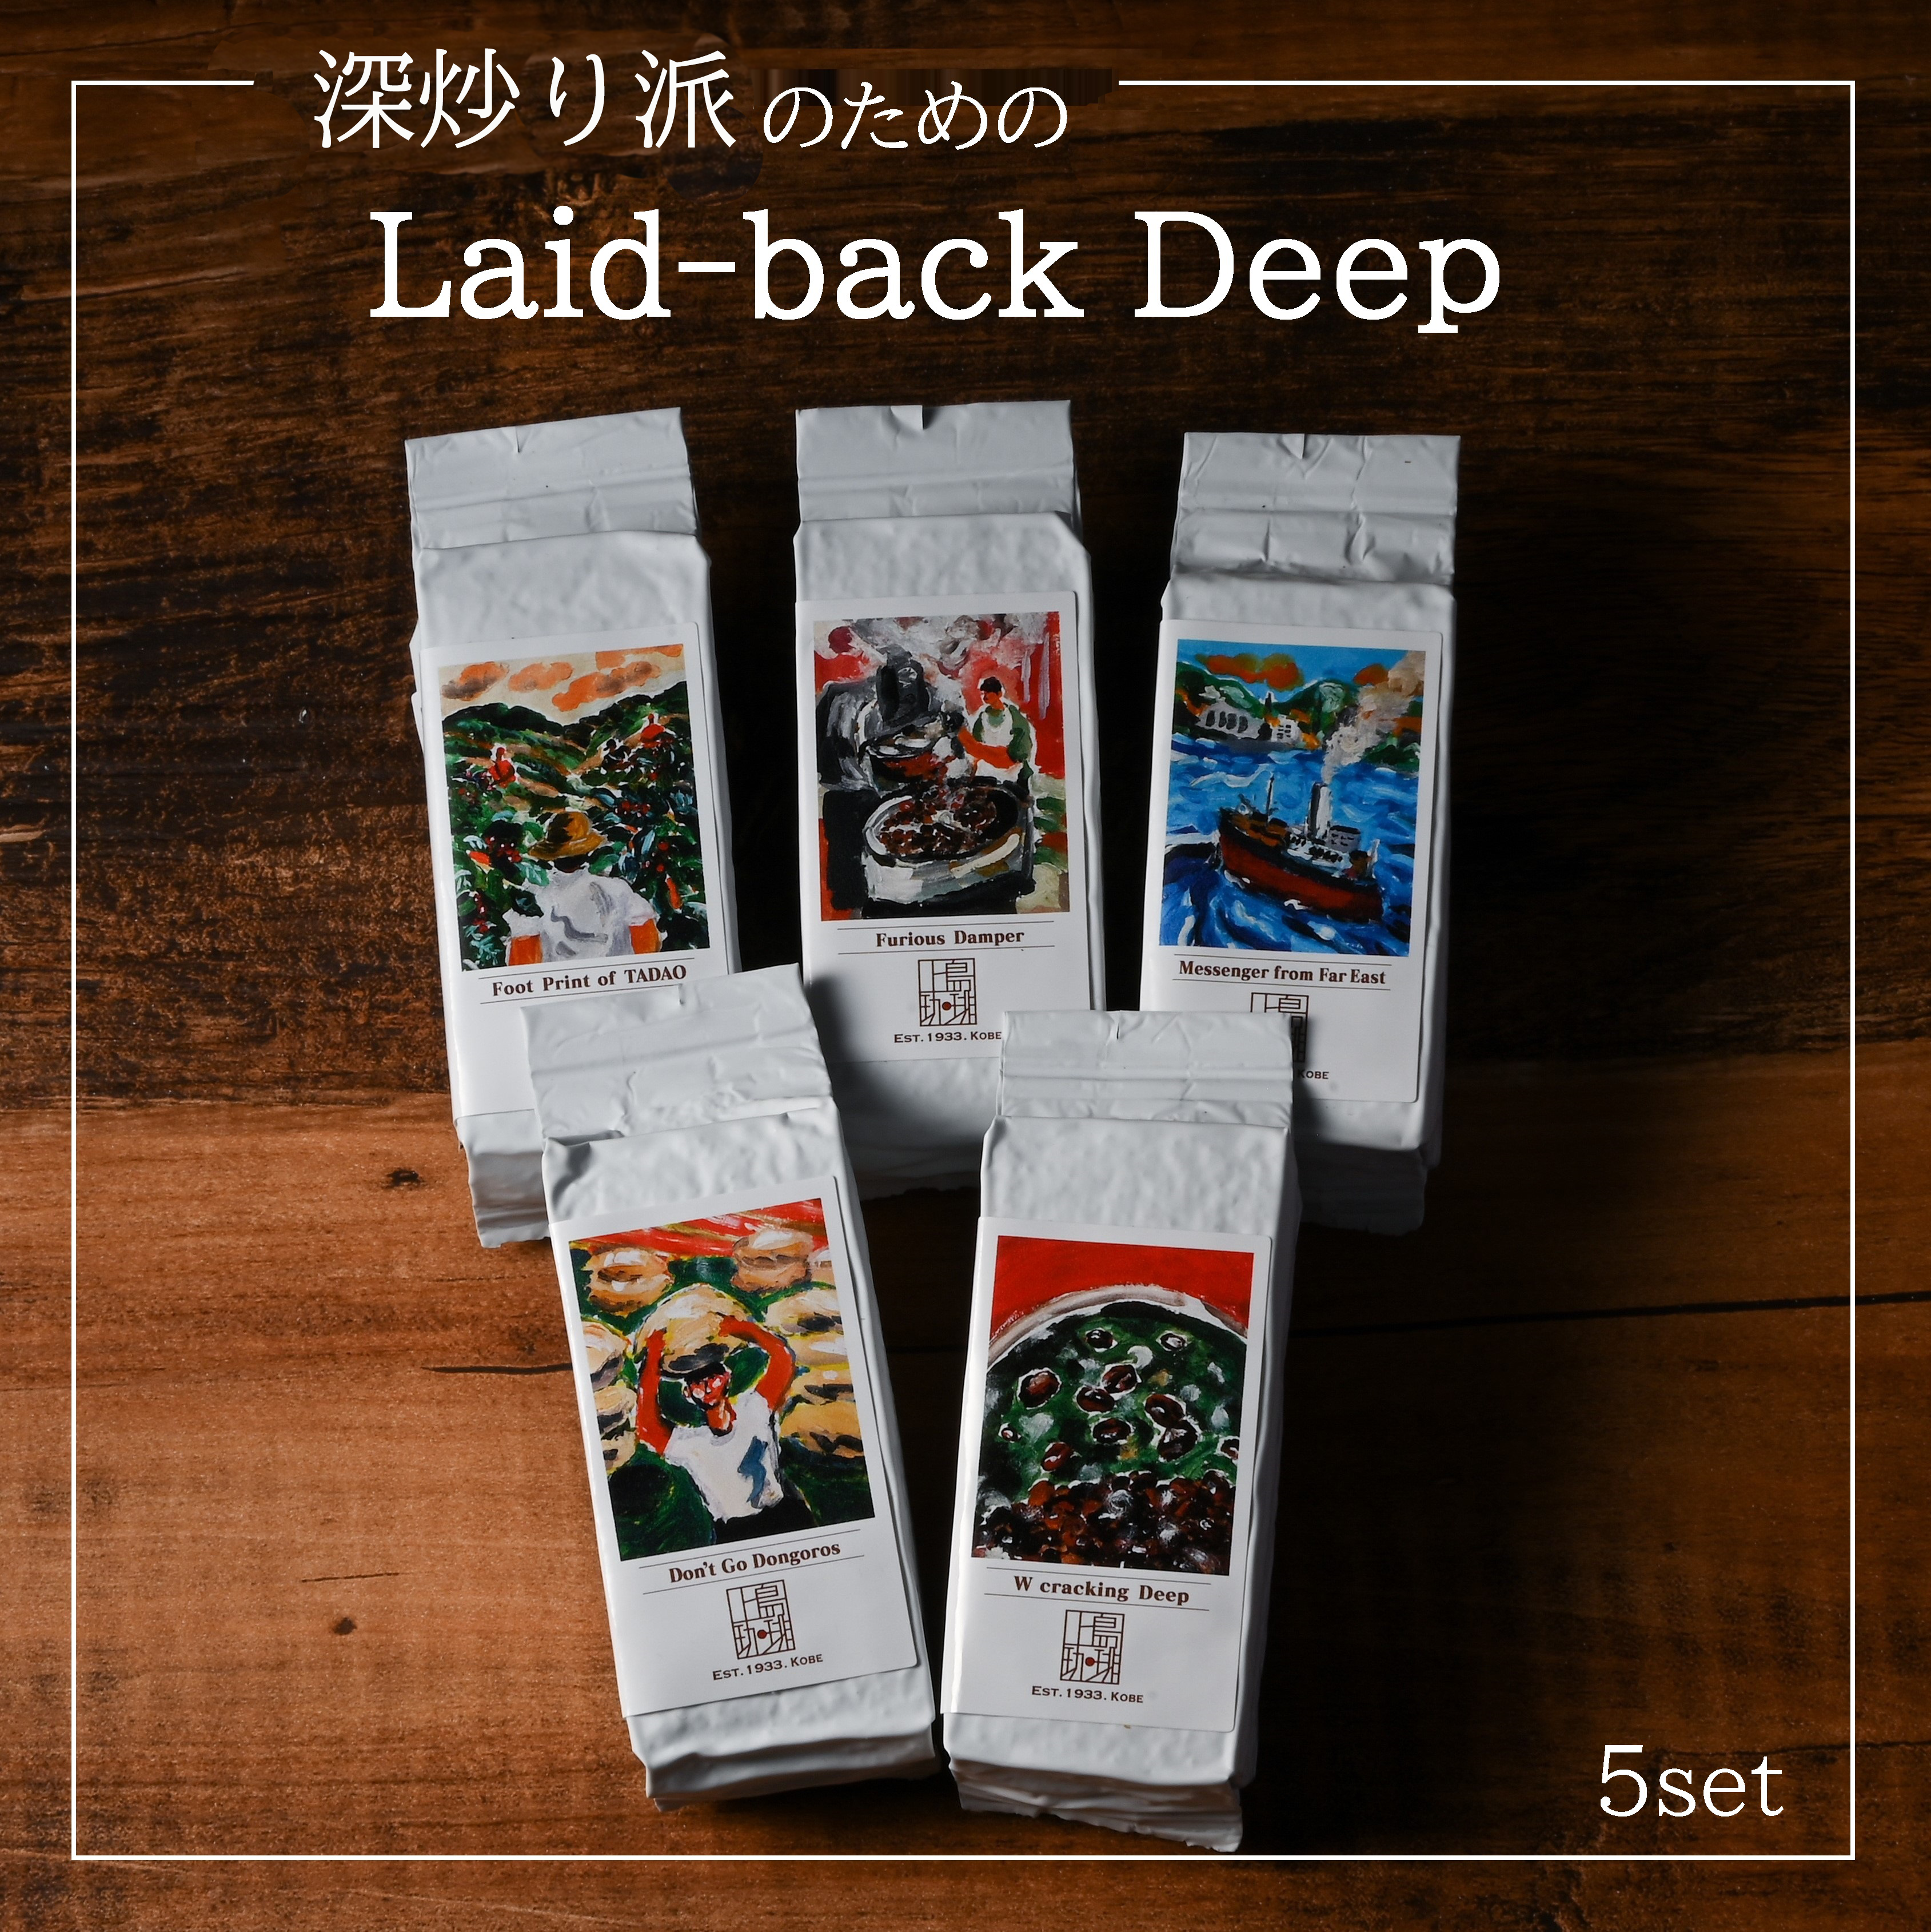 Laid-back Deep 深炒り派のためのおすすめフレッシュキューブ(1杯分/粉) 5個セット